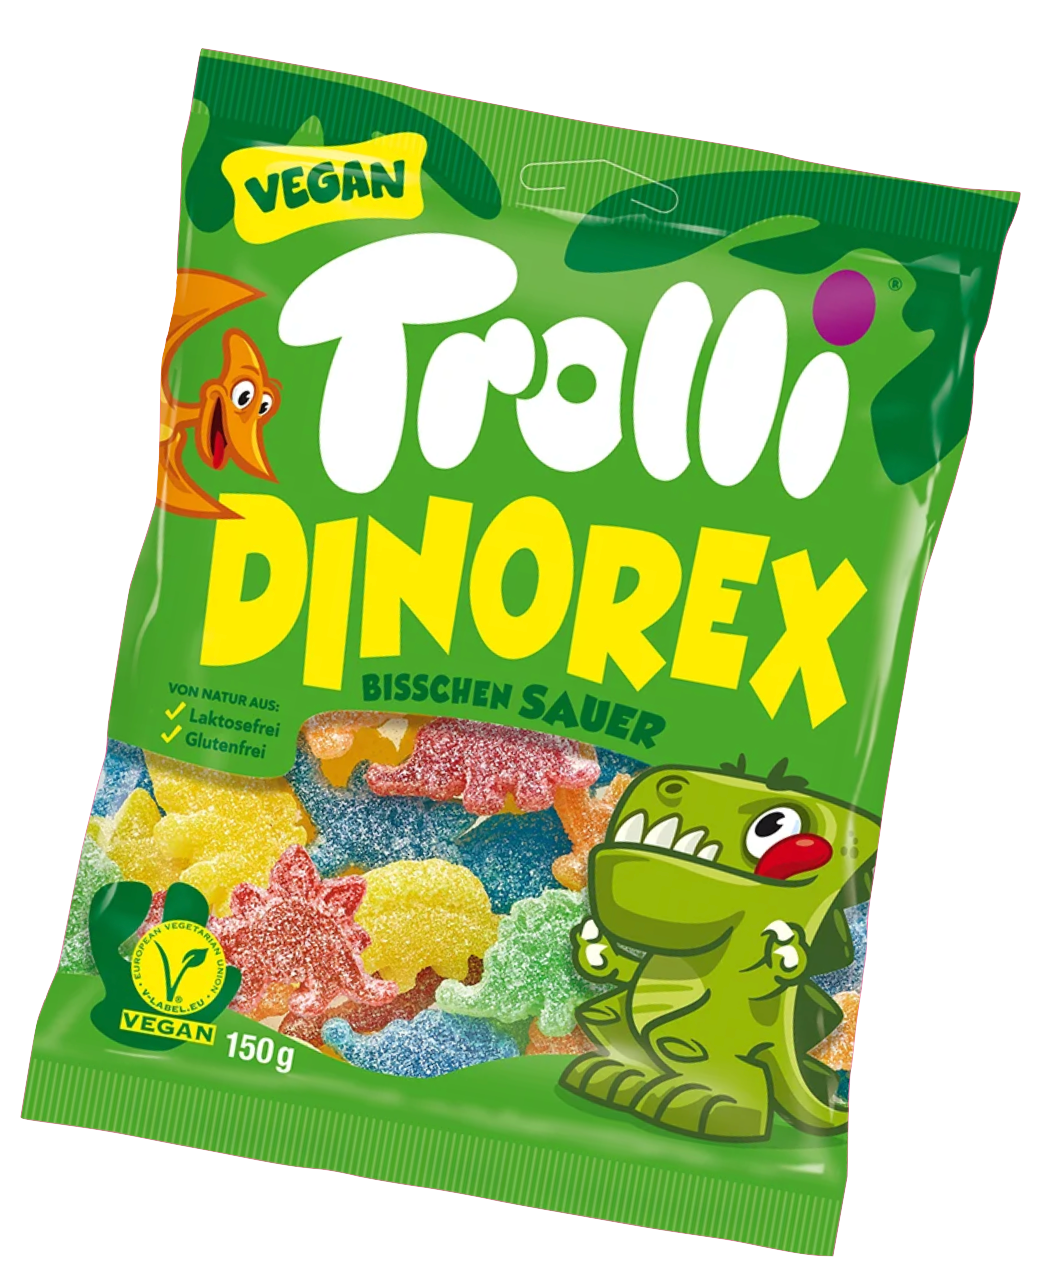 德國 Trolli 小恐龍素食軟糖 Dino Rex Vegan Gummy Candy (150g)